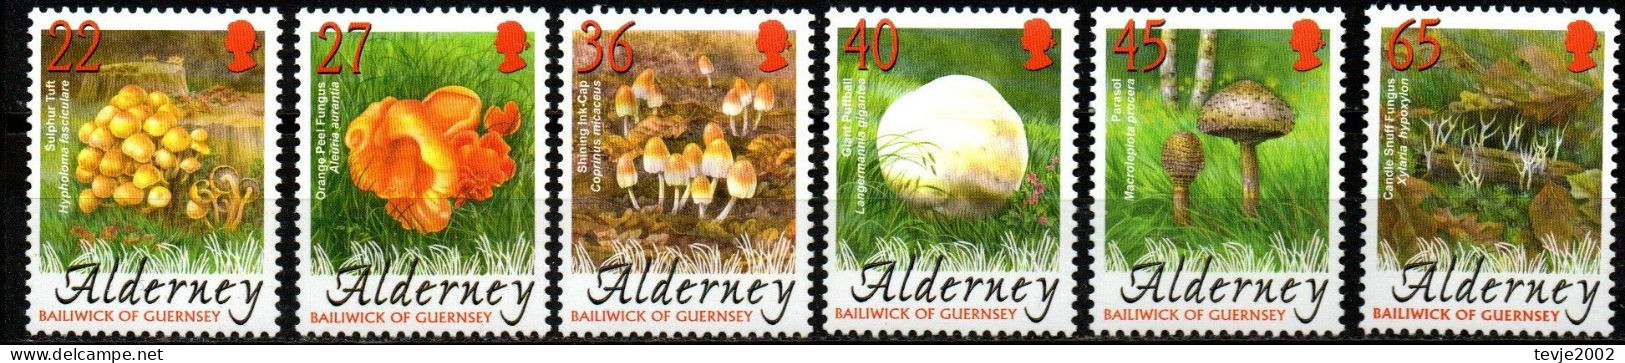 Alderney 2004 - Mi.Nr. 224 - 229 - Postfrisch MNH - Pilze Mushrooms - Pilze